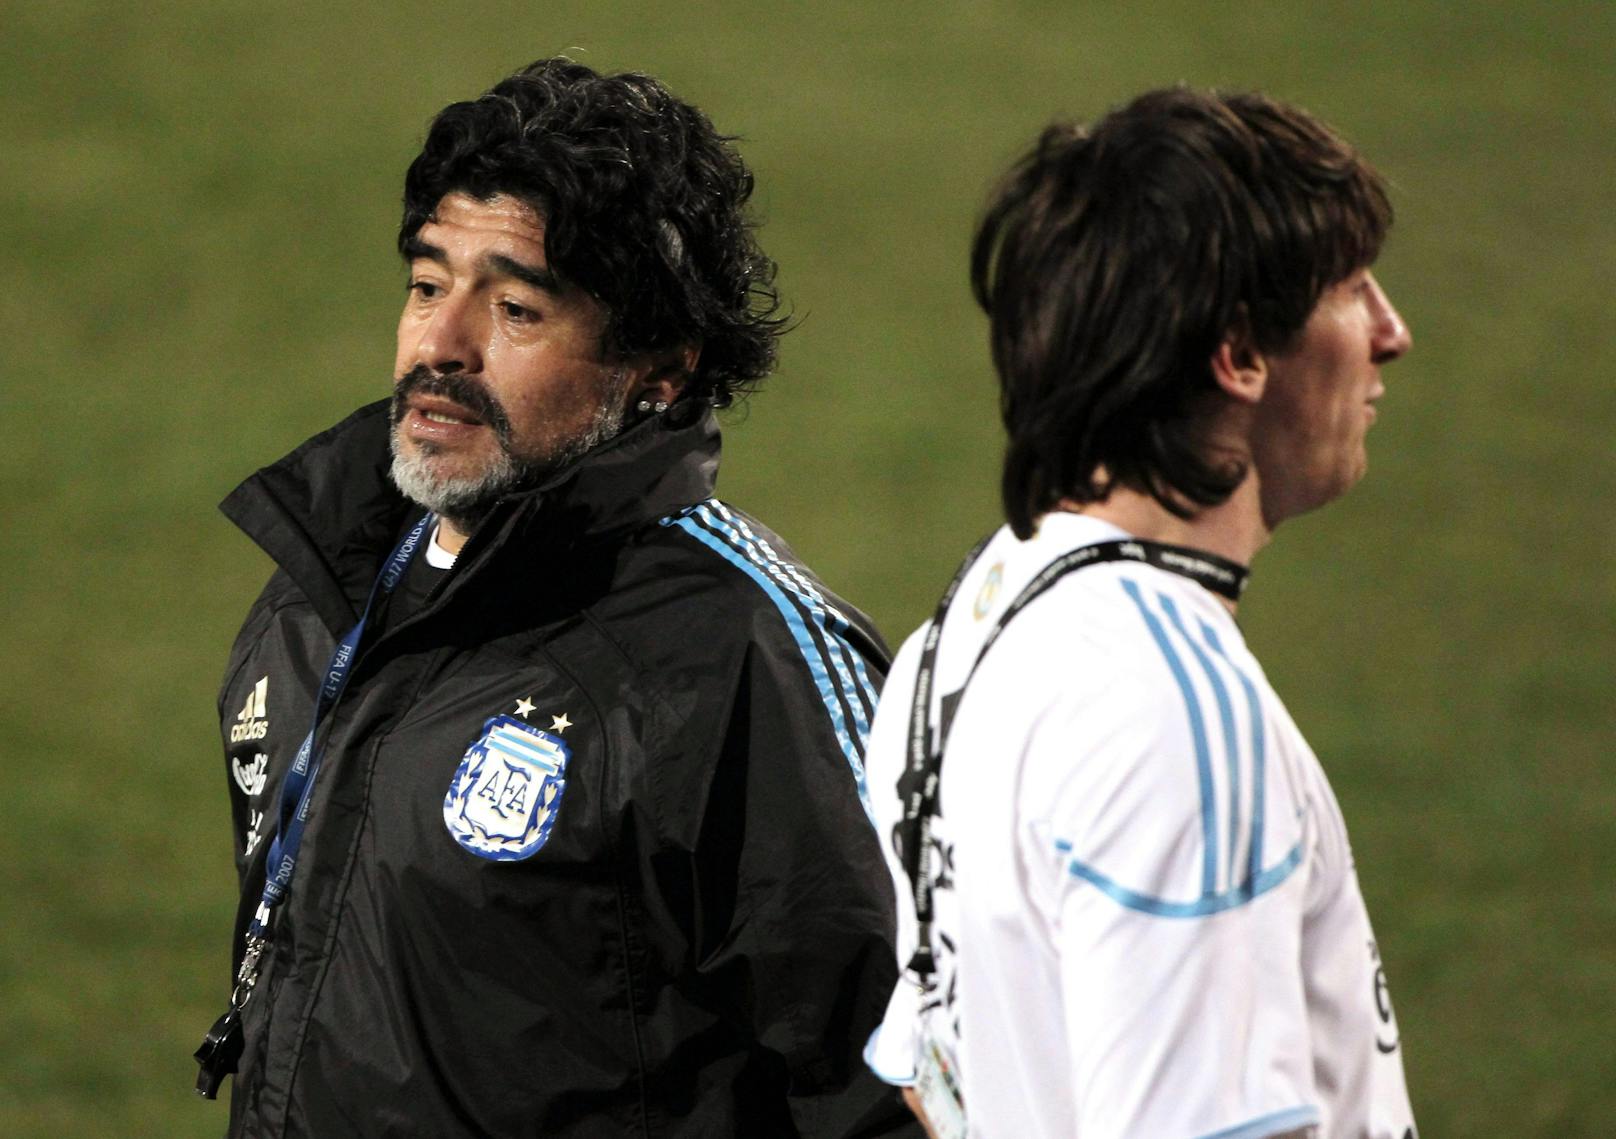 2010 verliert er zusammen mit Lionel Messi, seinem Nachfolger, das WM-Viertelfinale gegen Deutschland mit 0:4.